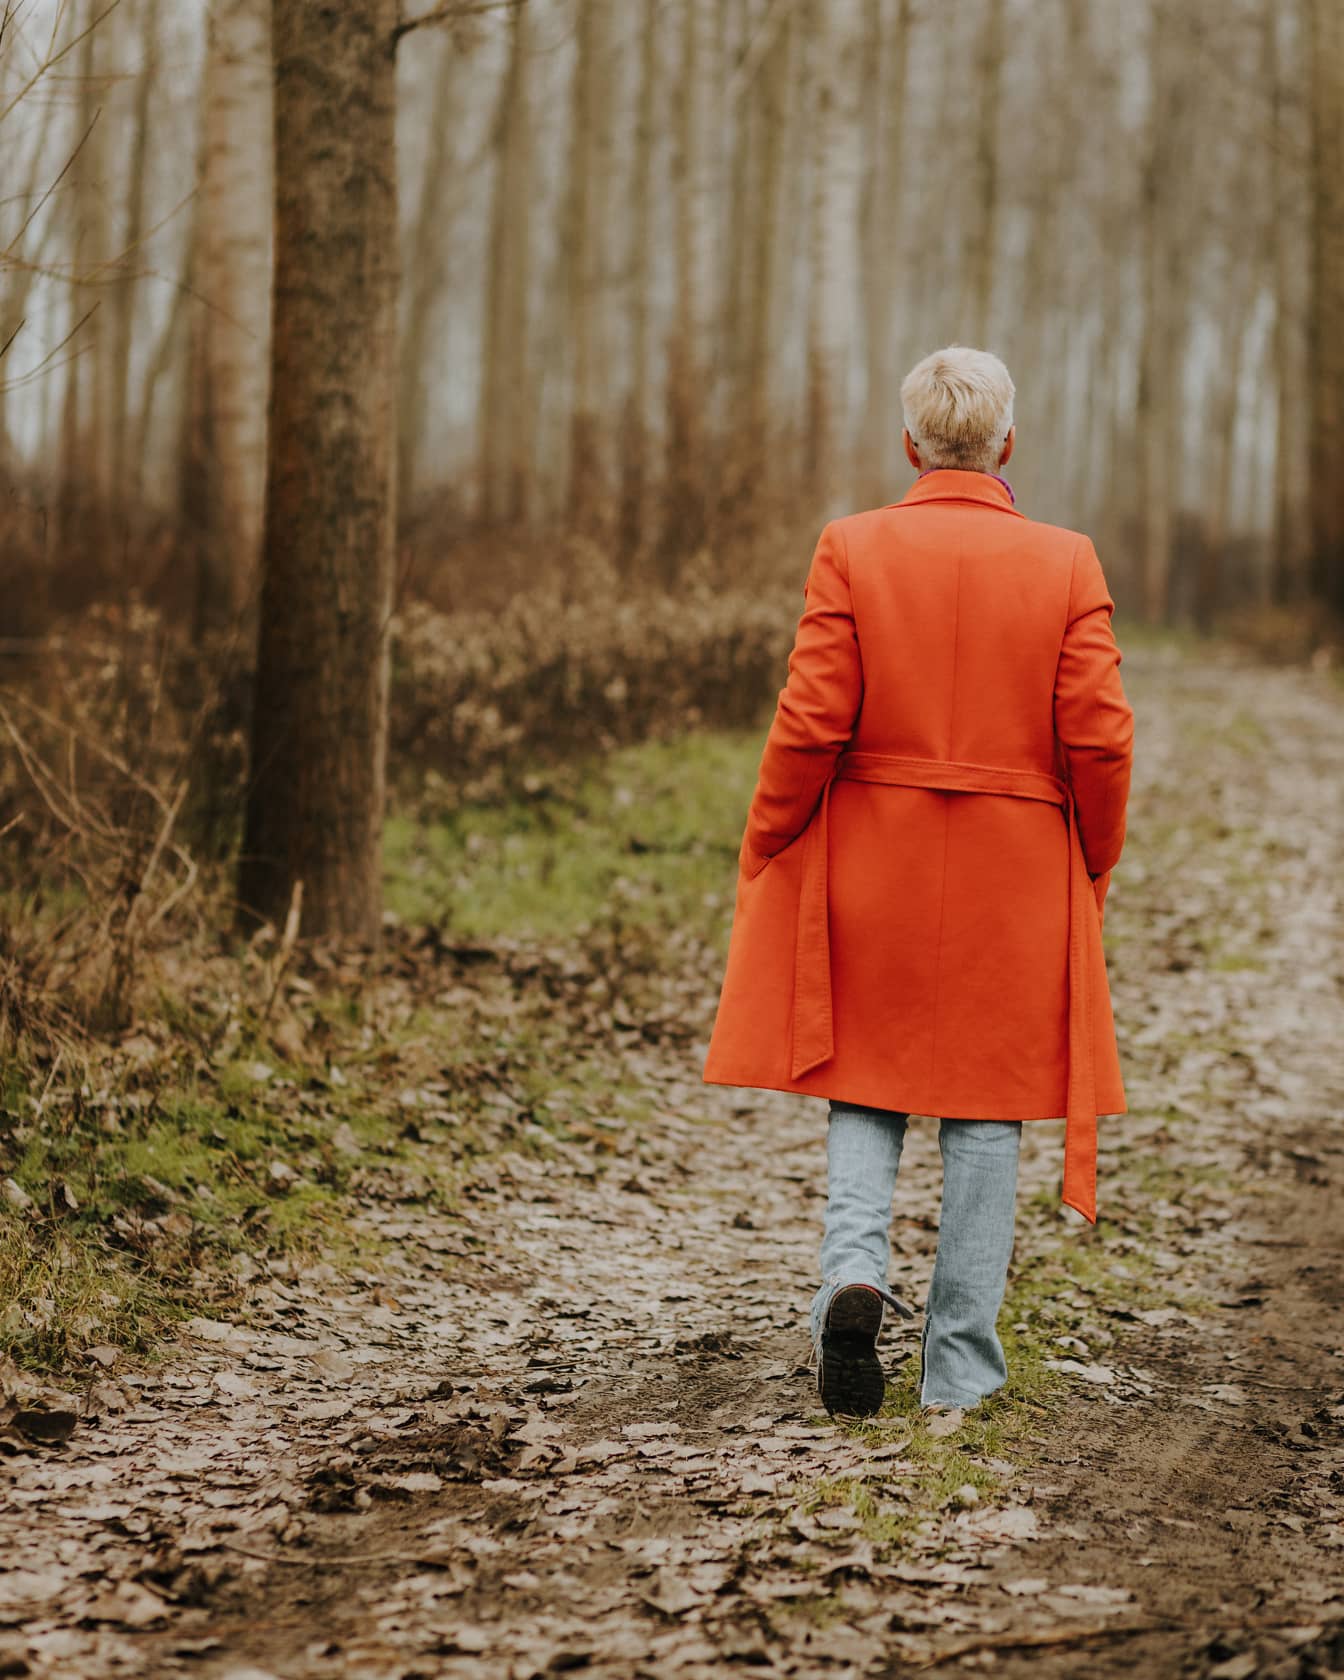 Narancssárga kabátos nő sétál az erdei ösvényen őszi napon